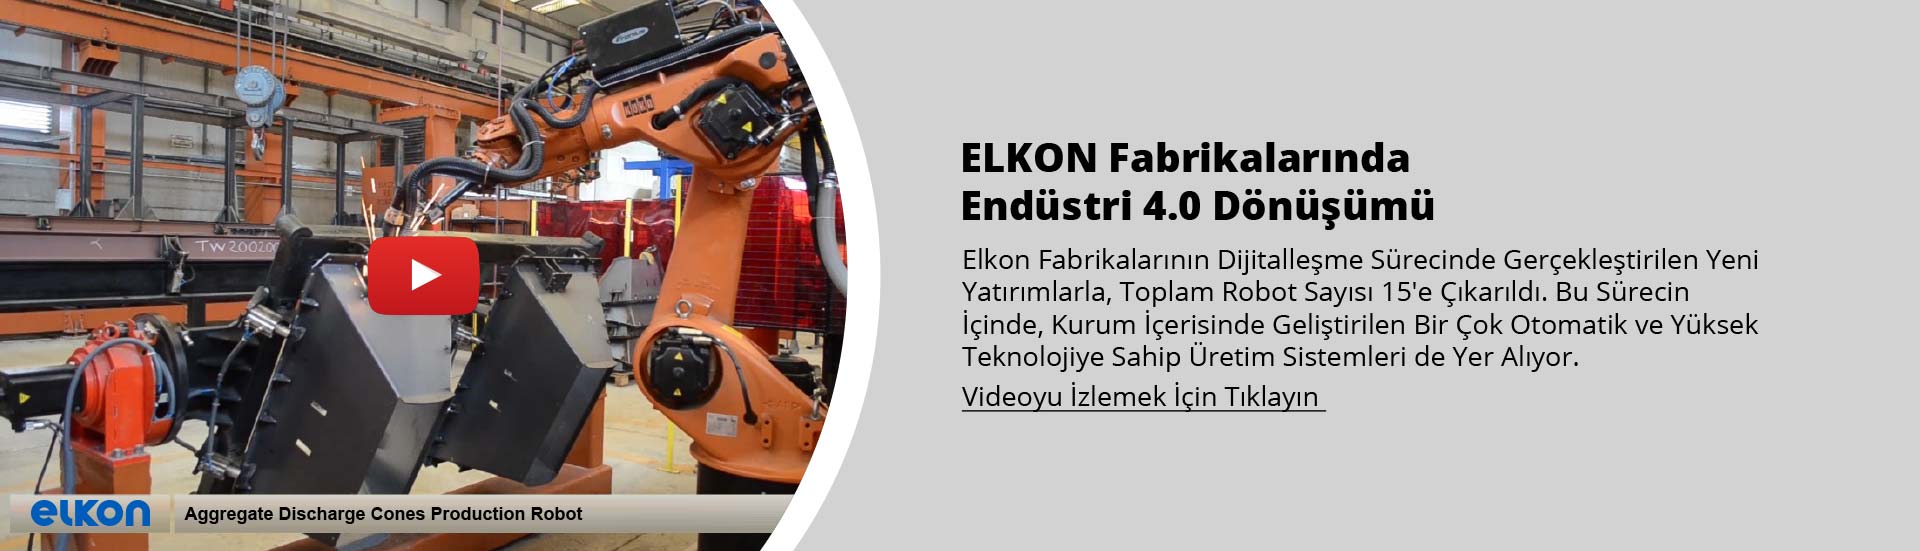 ELKON Fabrikalarında Endüstri 4.0 Dönüşümü